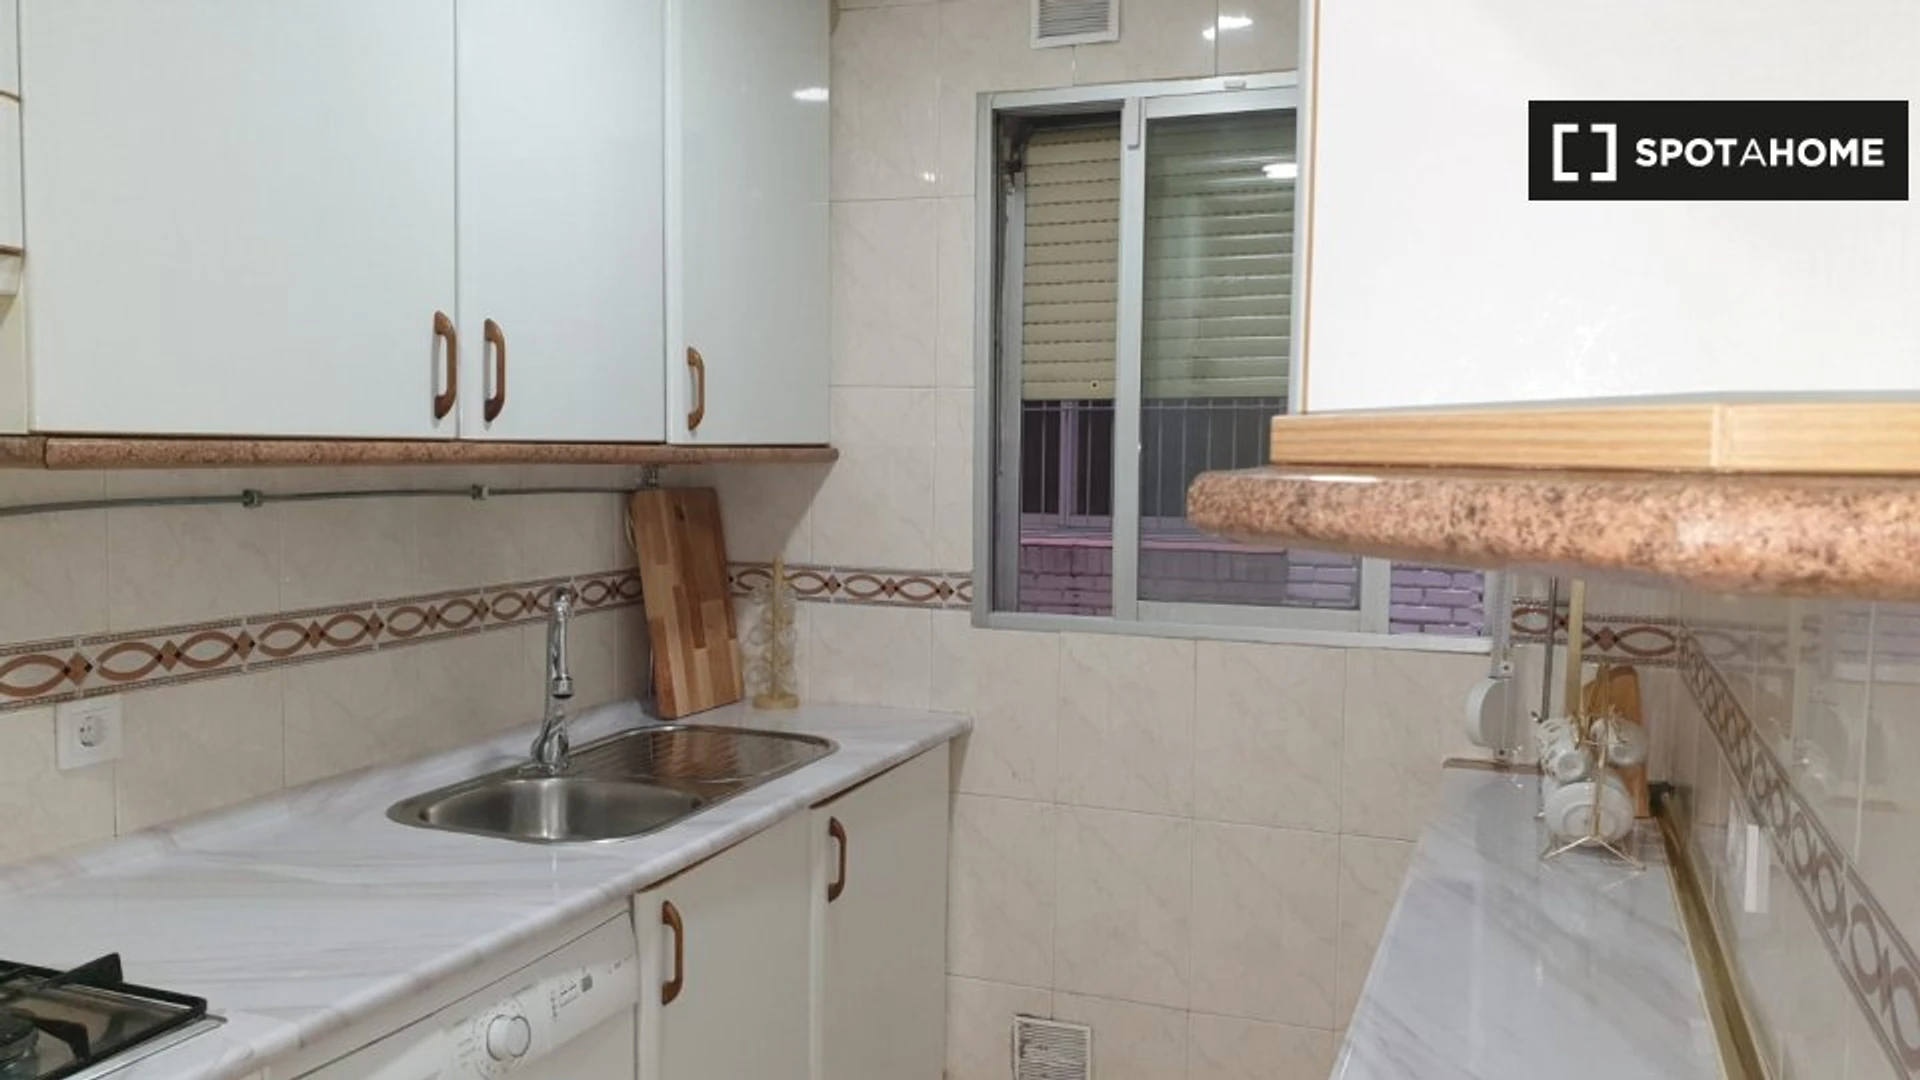 Habitación privada barata en Getafe